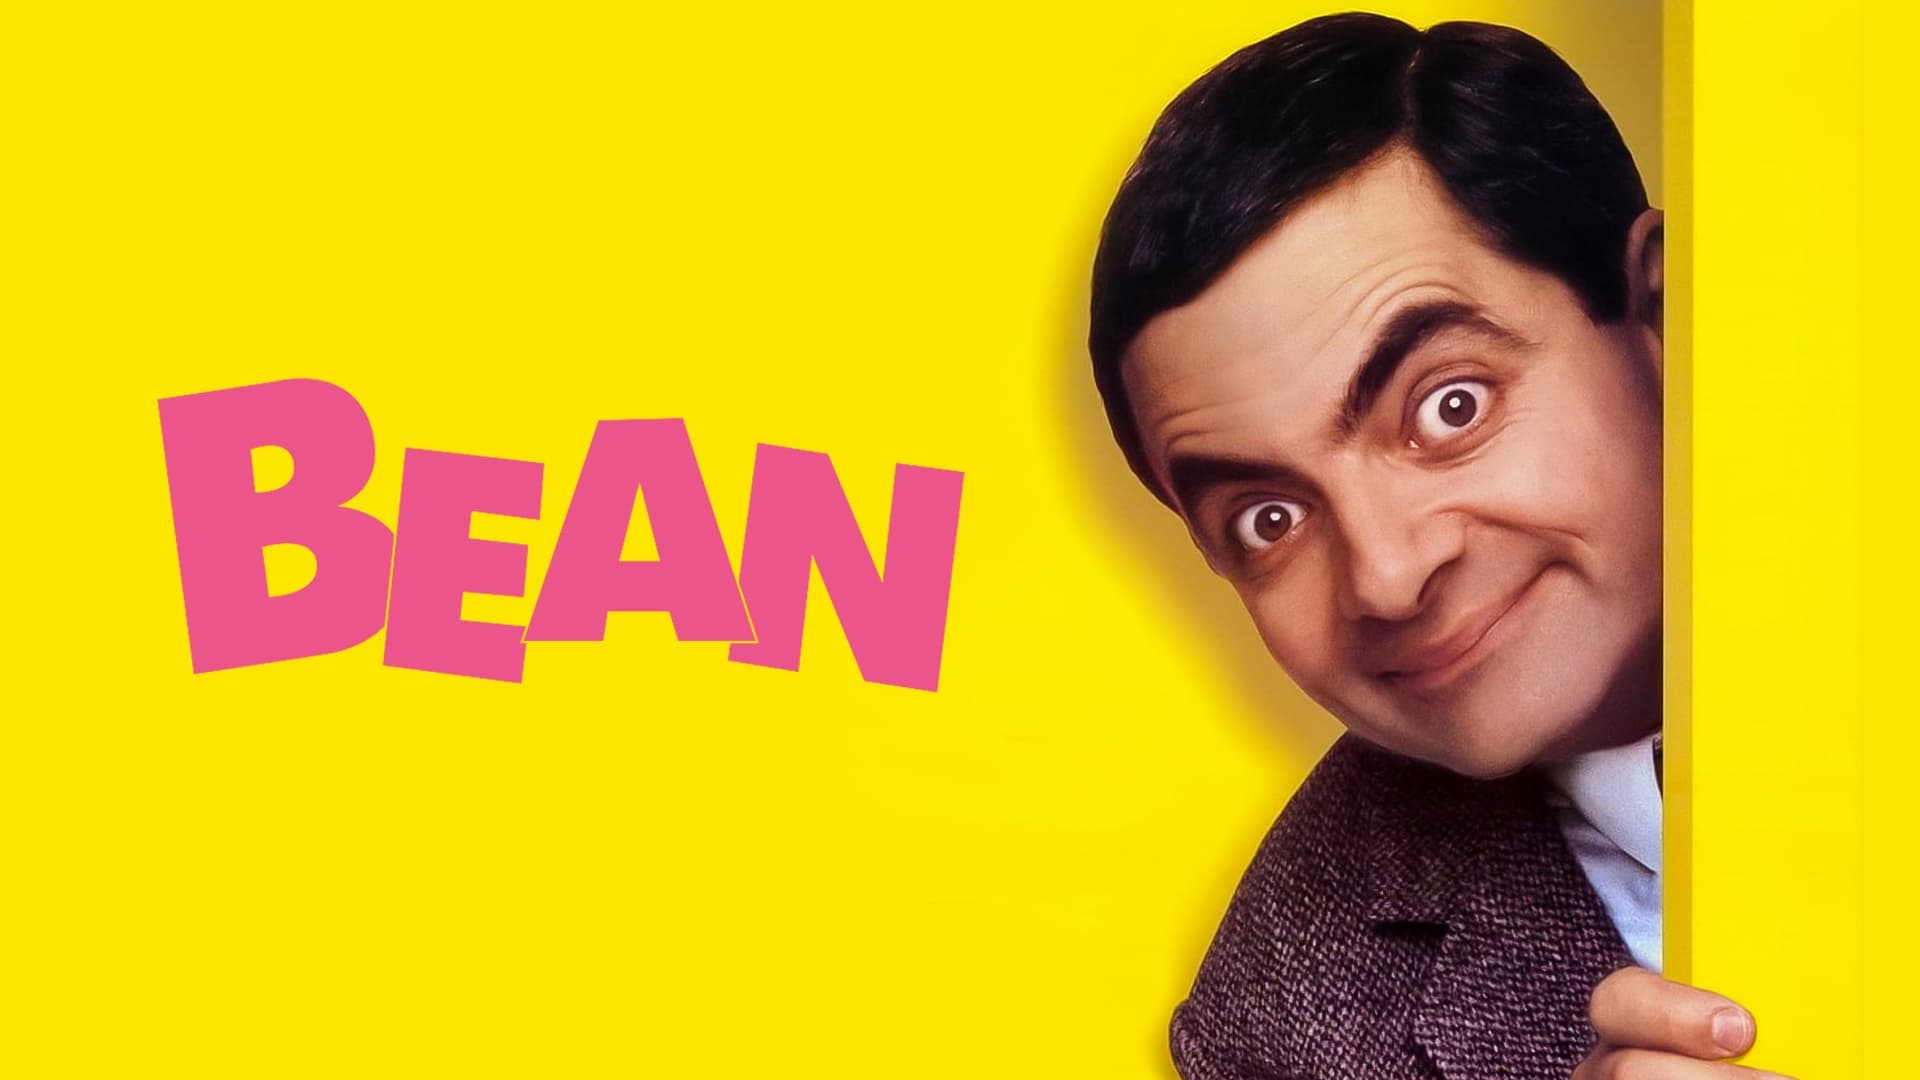 Bean - den totala katastroffilmen